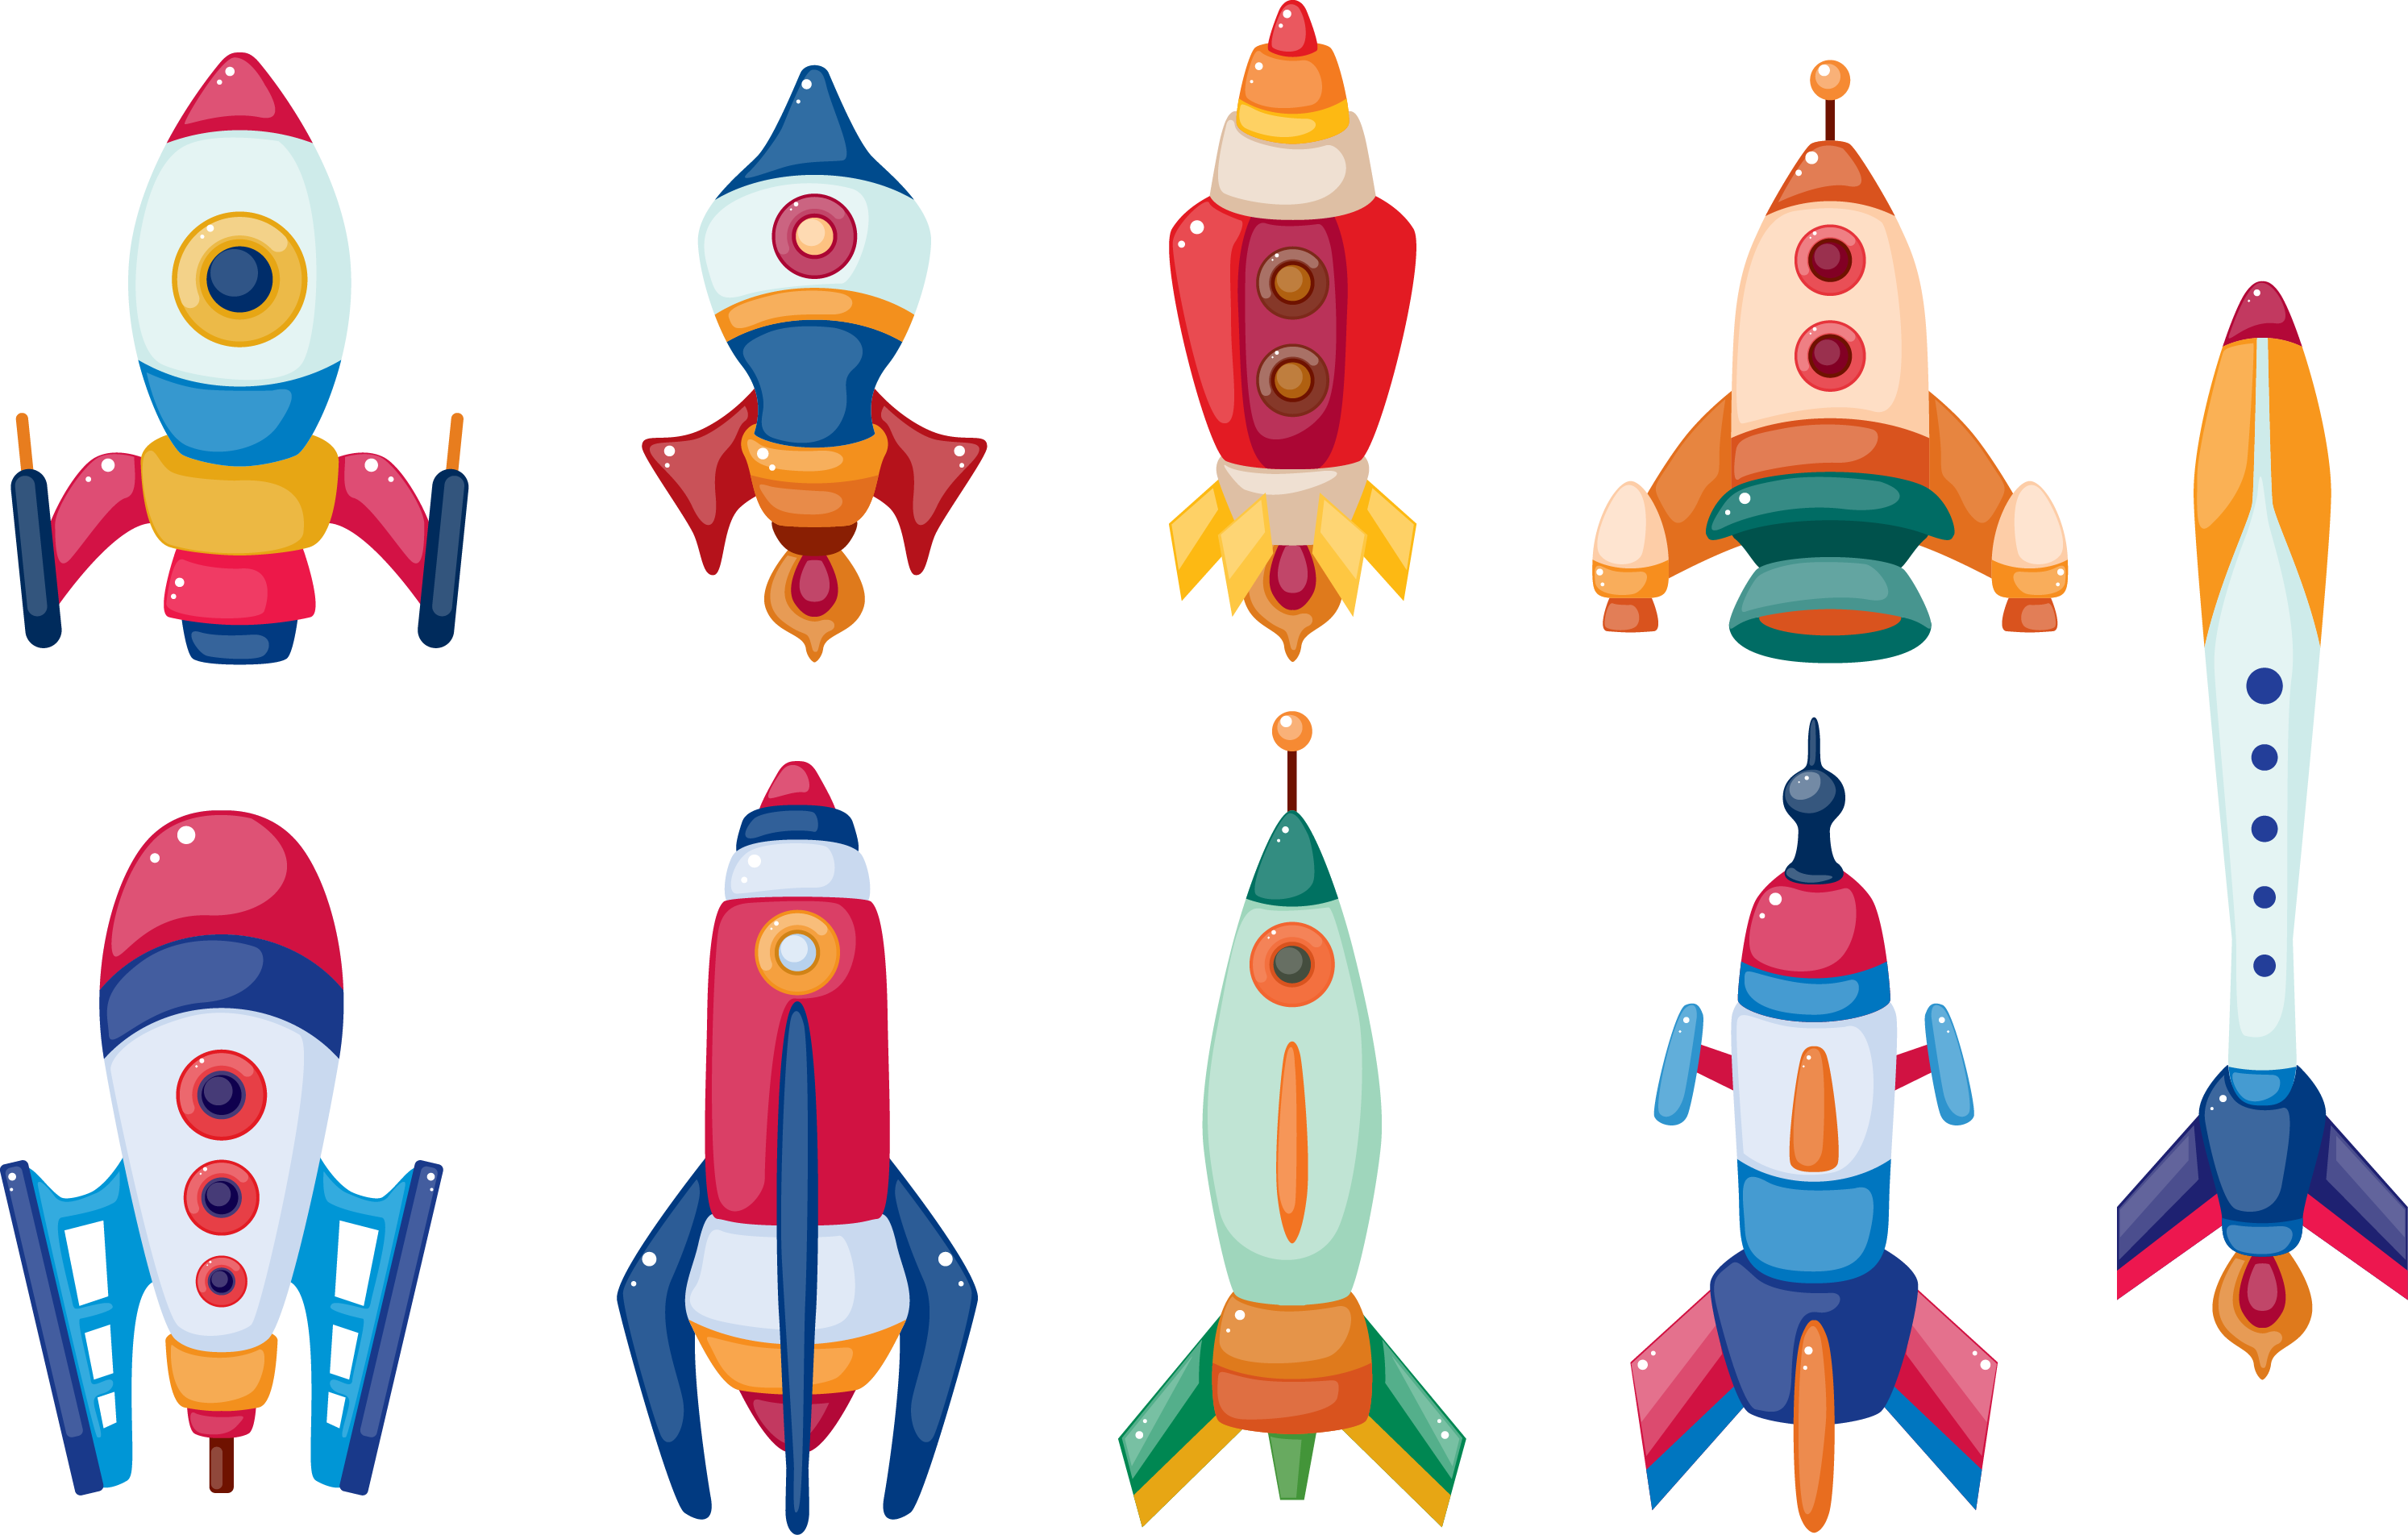 Ракета картинки для детей дошкольного возраста. Ракета для детей. Космическая ракета для детей. Ракета для детей дошкольного возраста. Ракета картинка для детей.